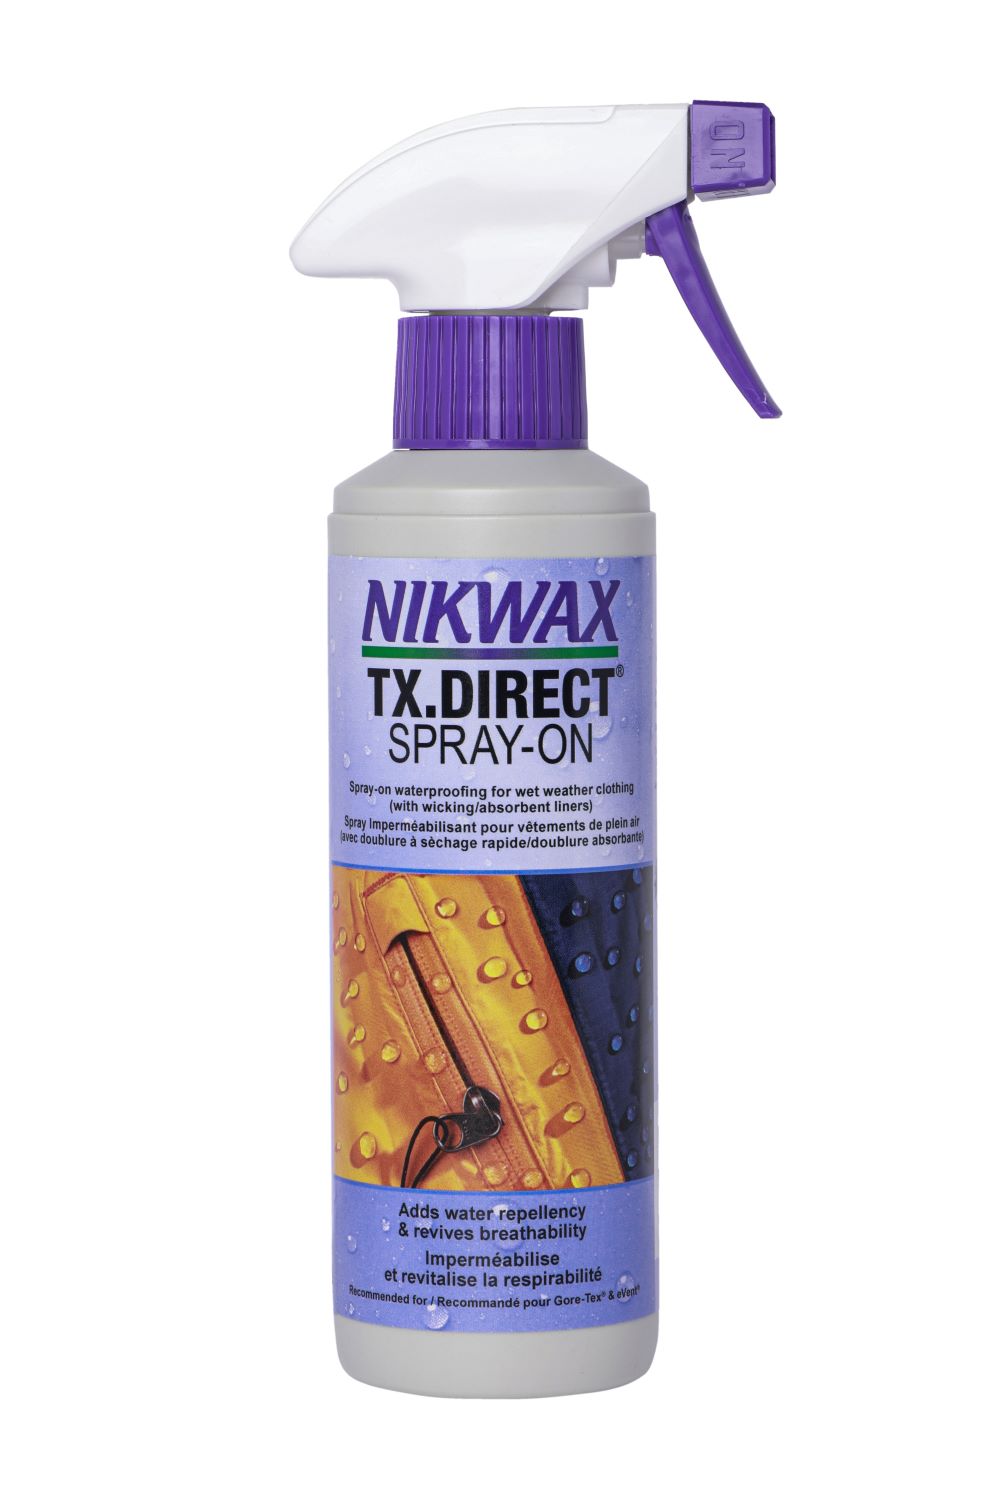 Nikwax Hardshell Clean/Waterproof Duo-Pack - 10 oz each